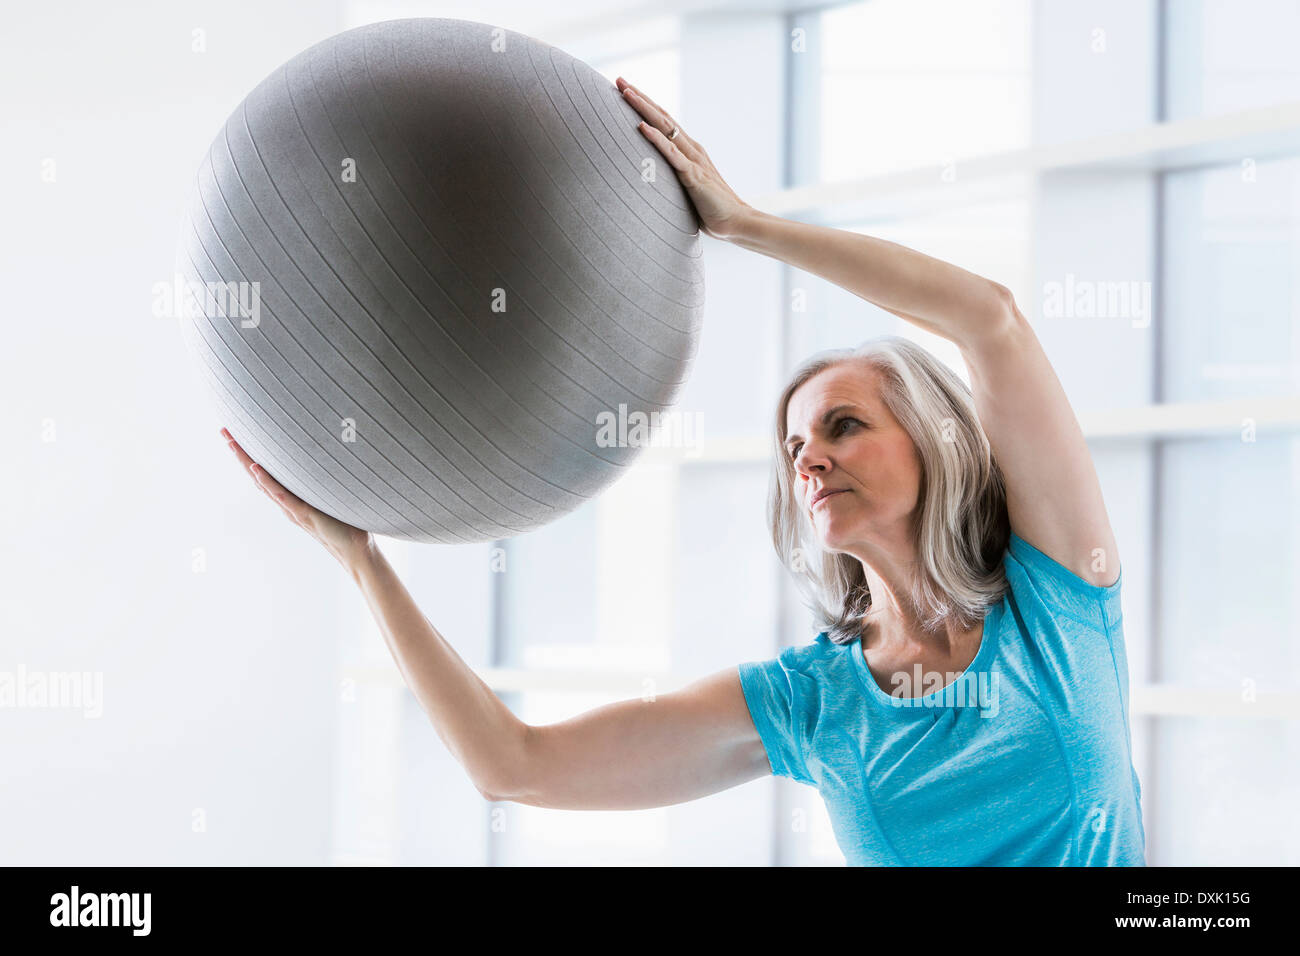 La donna caucasica pendente con sfera di fitness Foto Stock